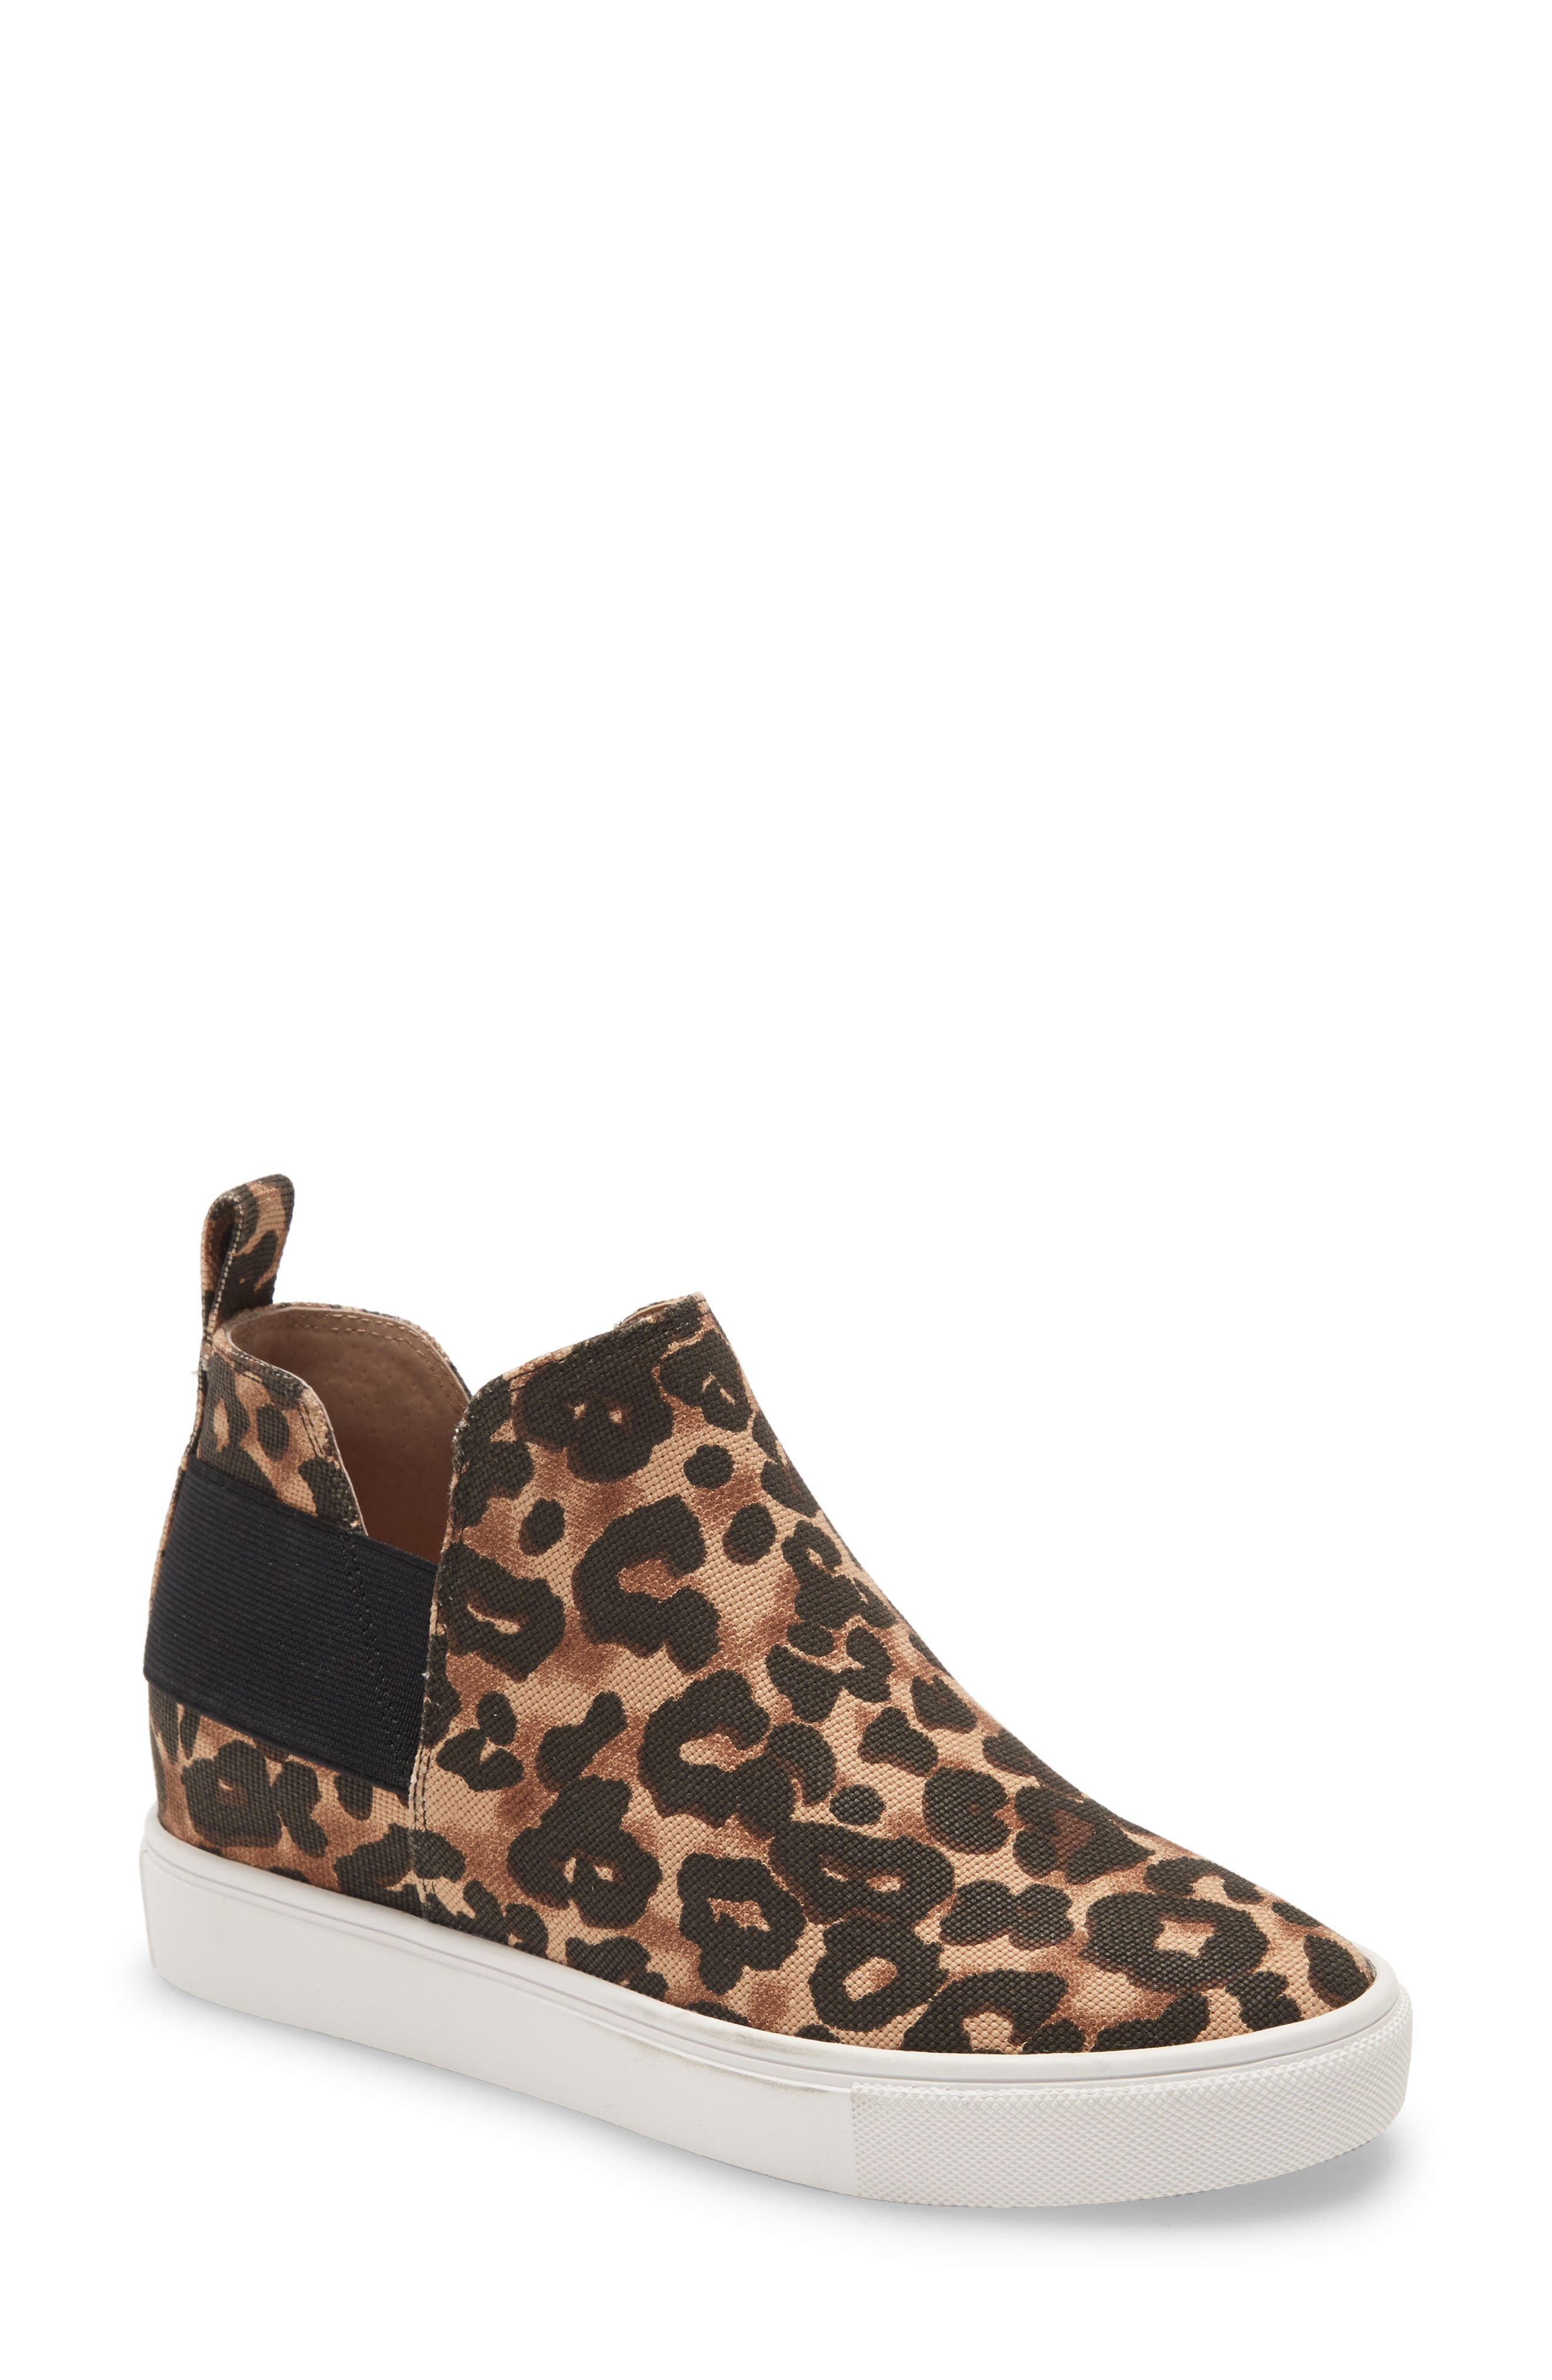 steve madden leopard slip on sneakers